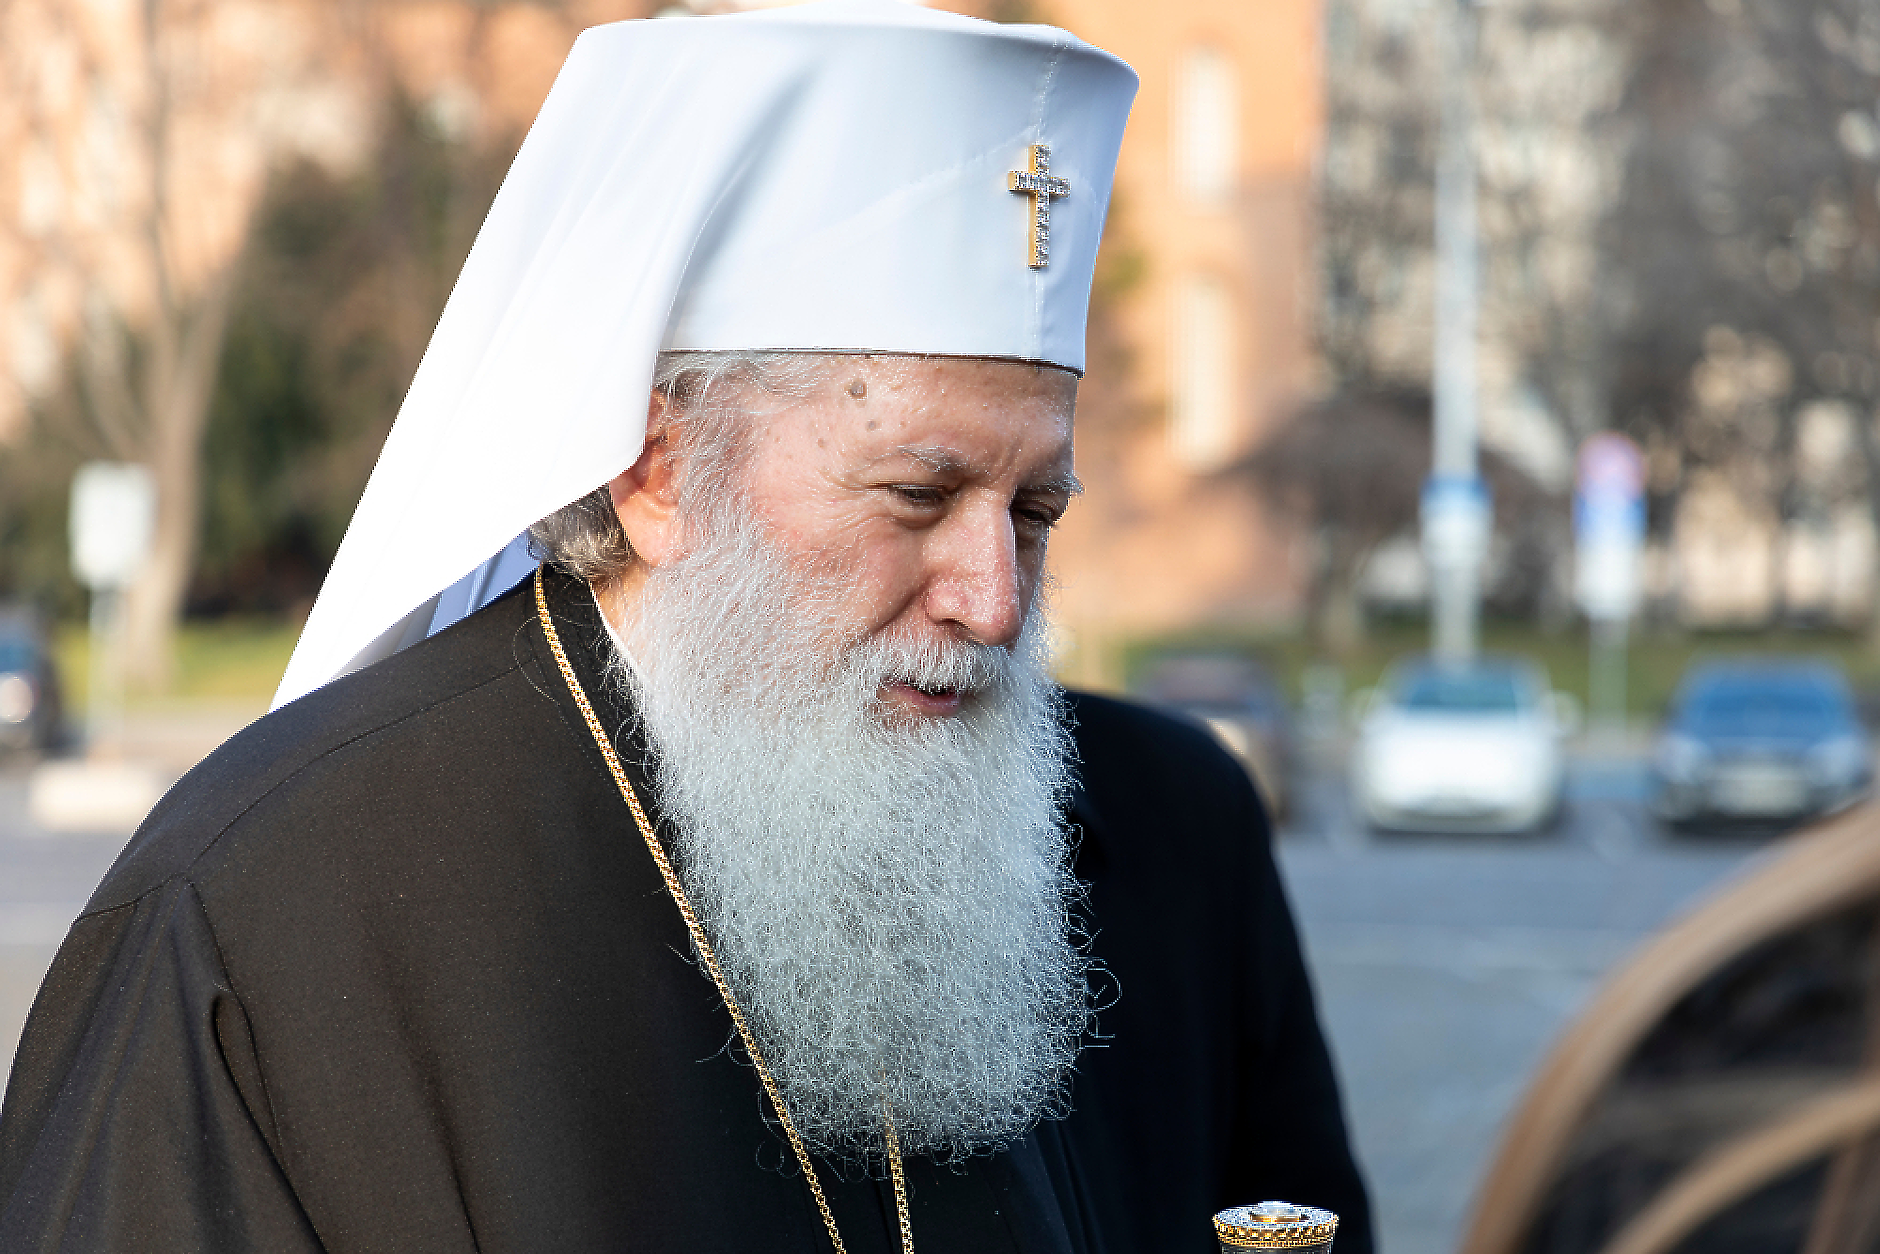 Патриарх Неофит във ВМА с белодробно заболяване, Св. Синод призова към молитви за него